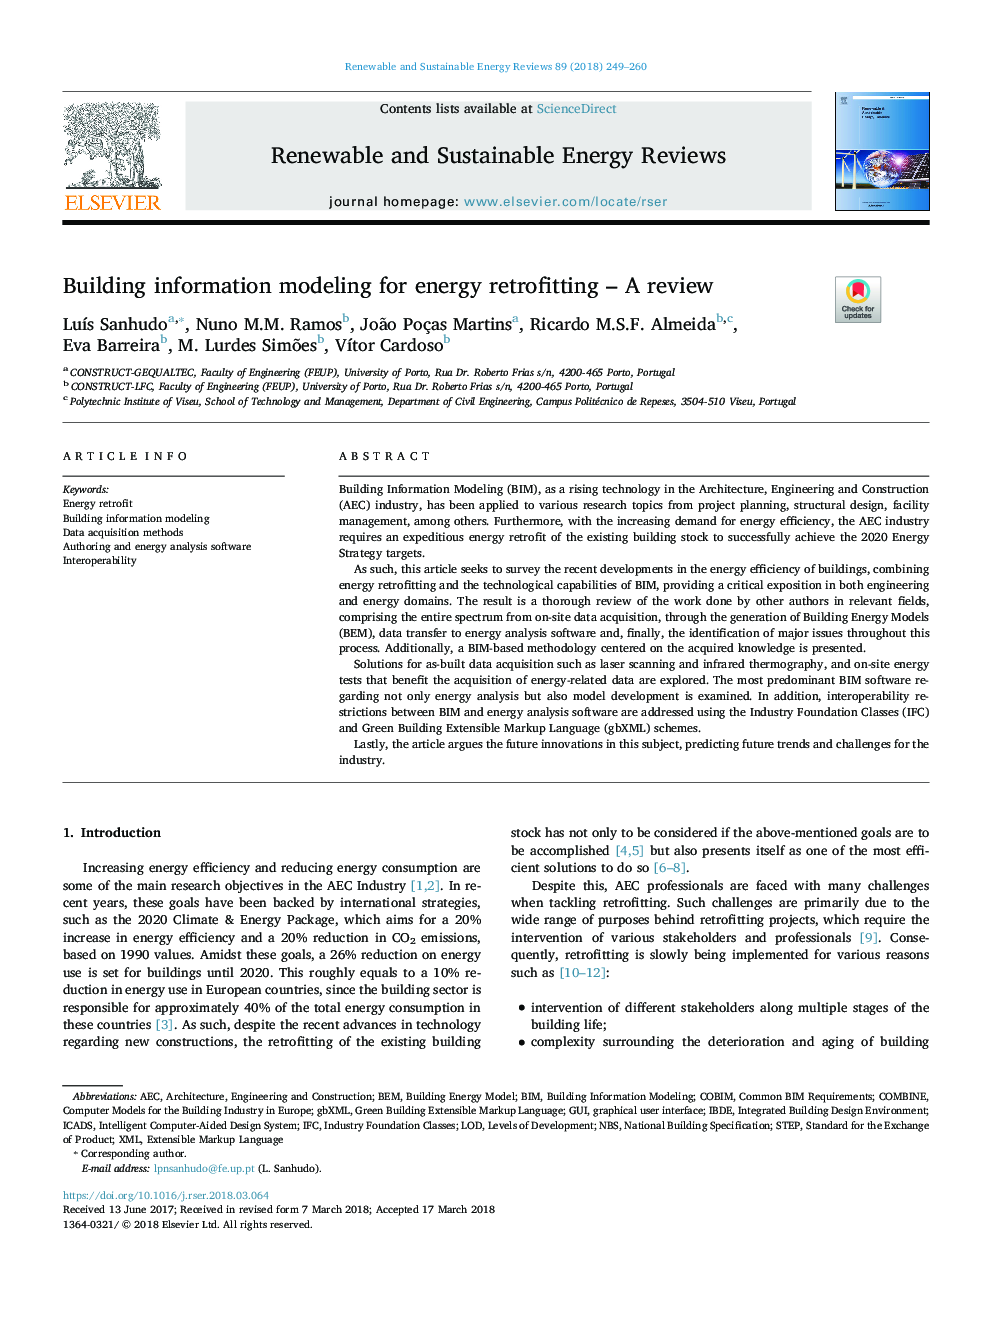 مدلسازی اطلاعات ساختمان برای تکمیل انرژی - بررسی 